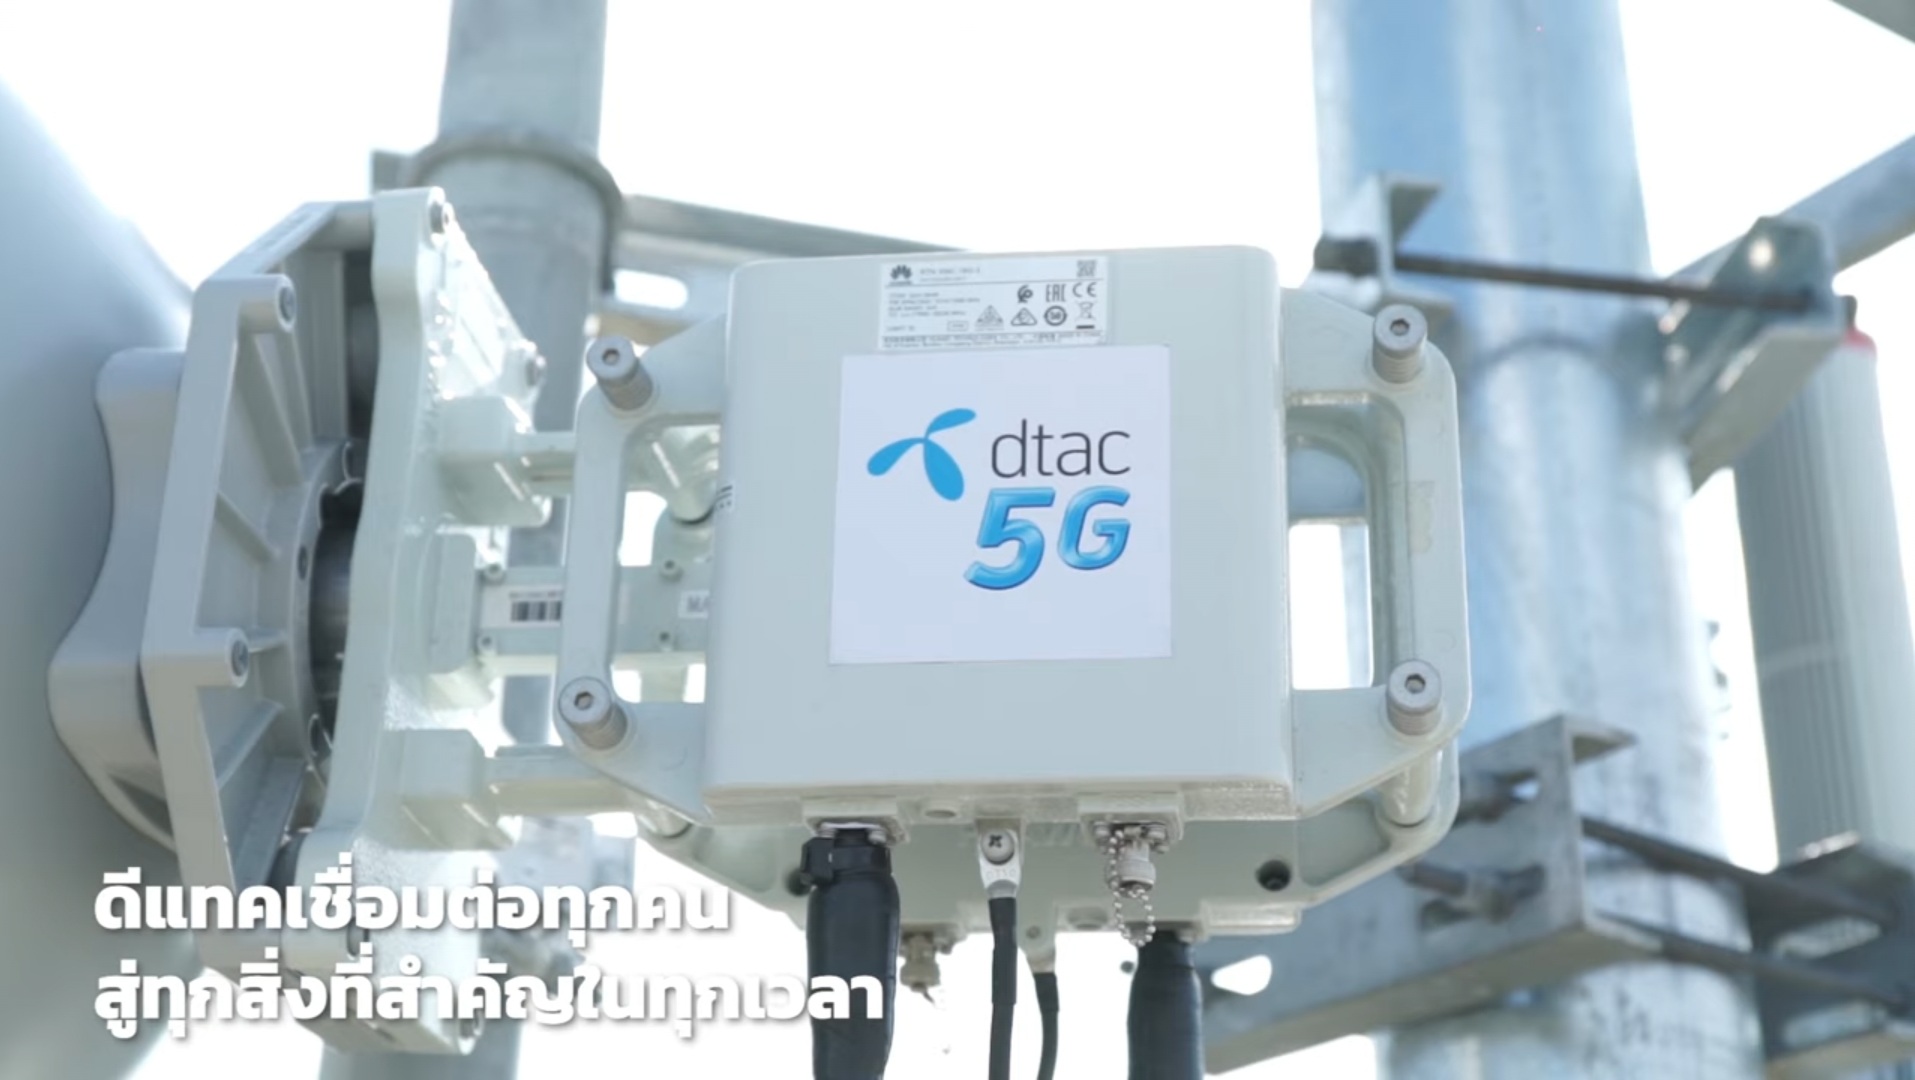 รายแรกในเอเชีย dtac x THE STANDARD นำ 5G คลื่น 26 GHz ทำ LIVE Broadcast จากสตูดิโอสู่ผู้ชมทั่วโลก